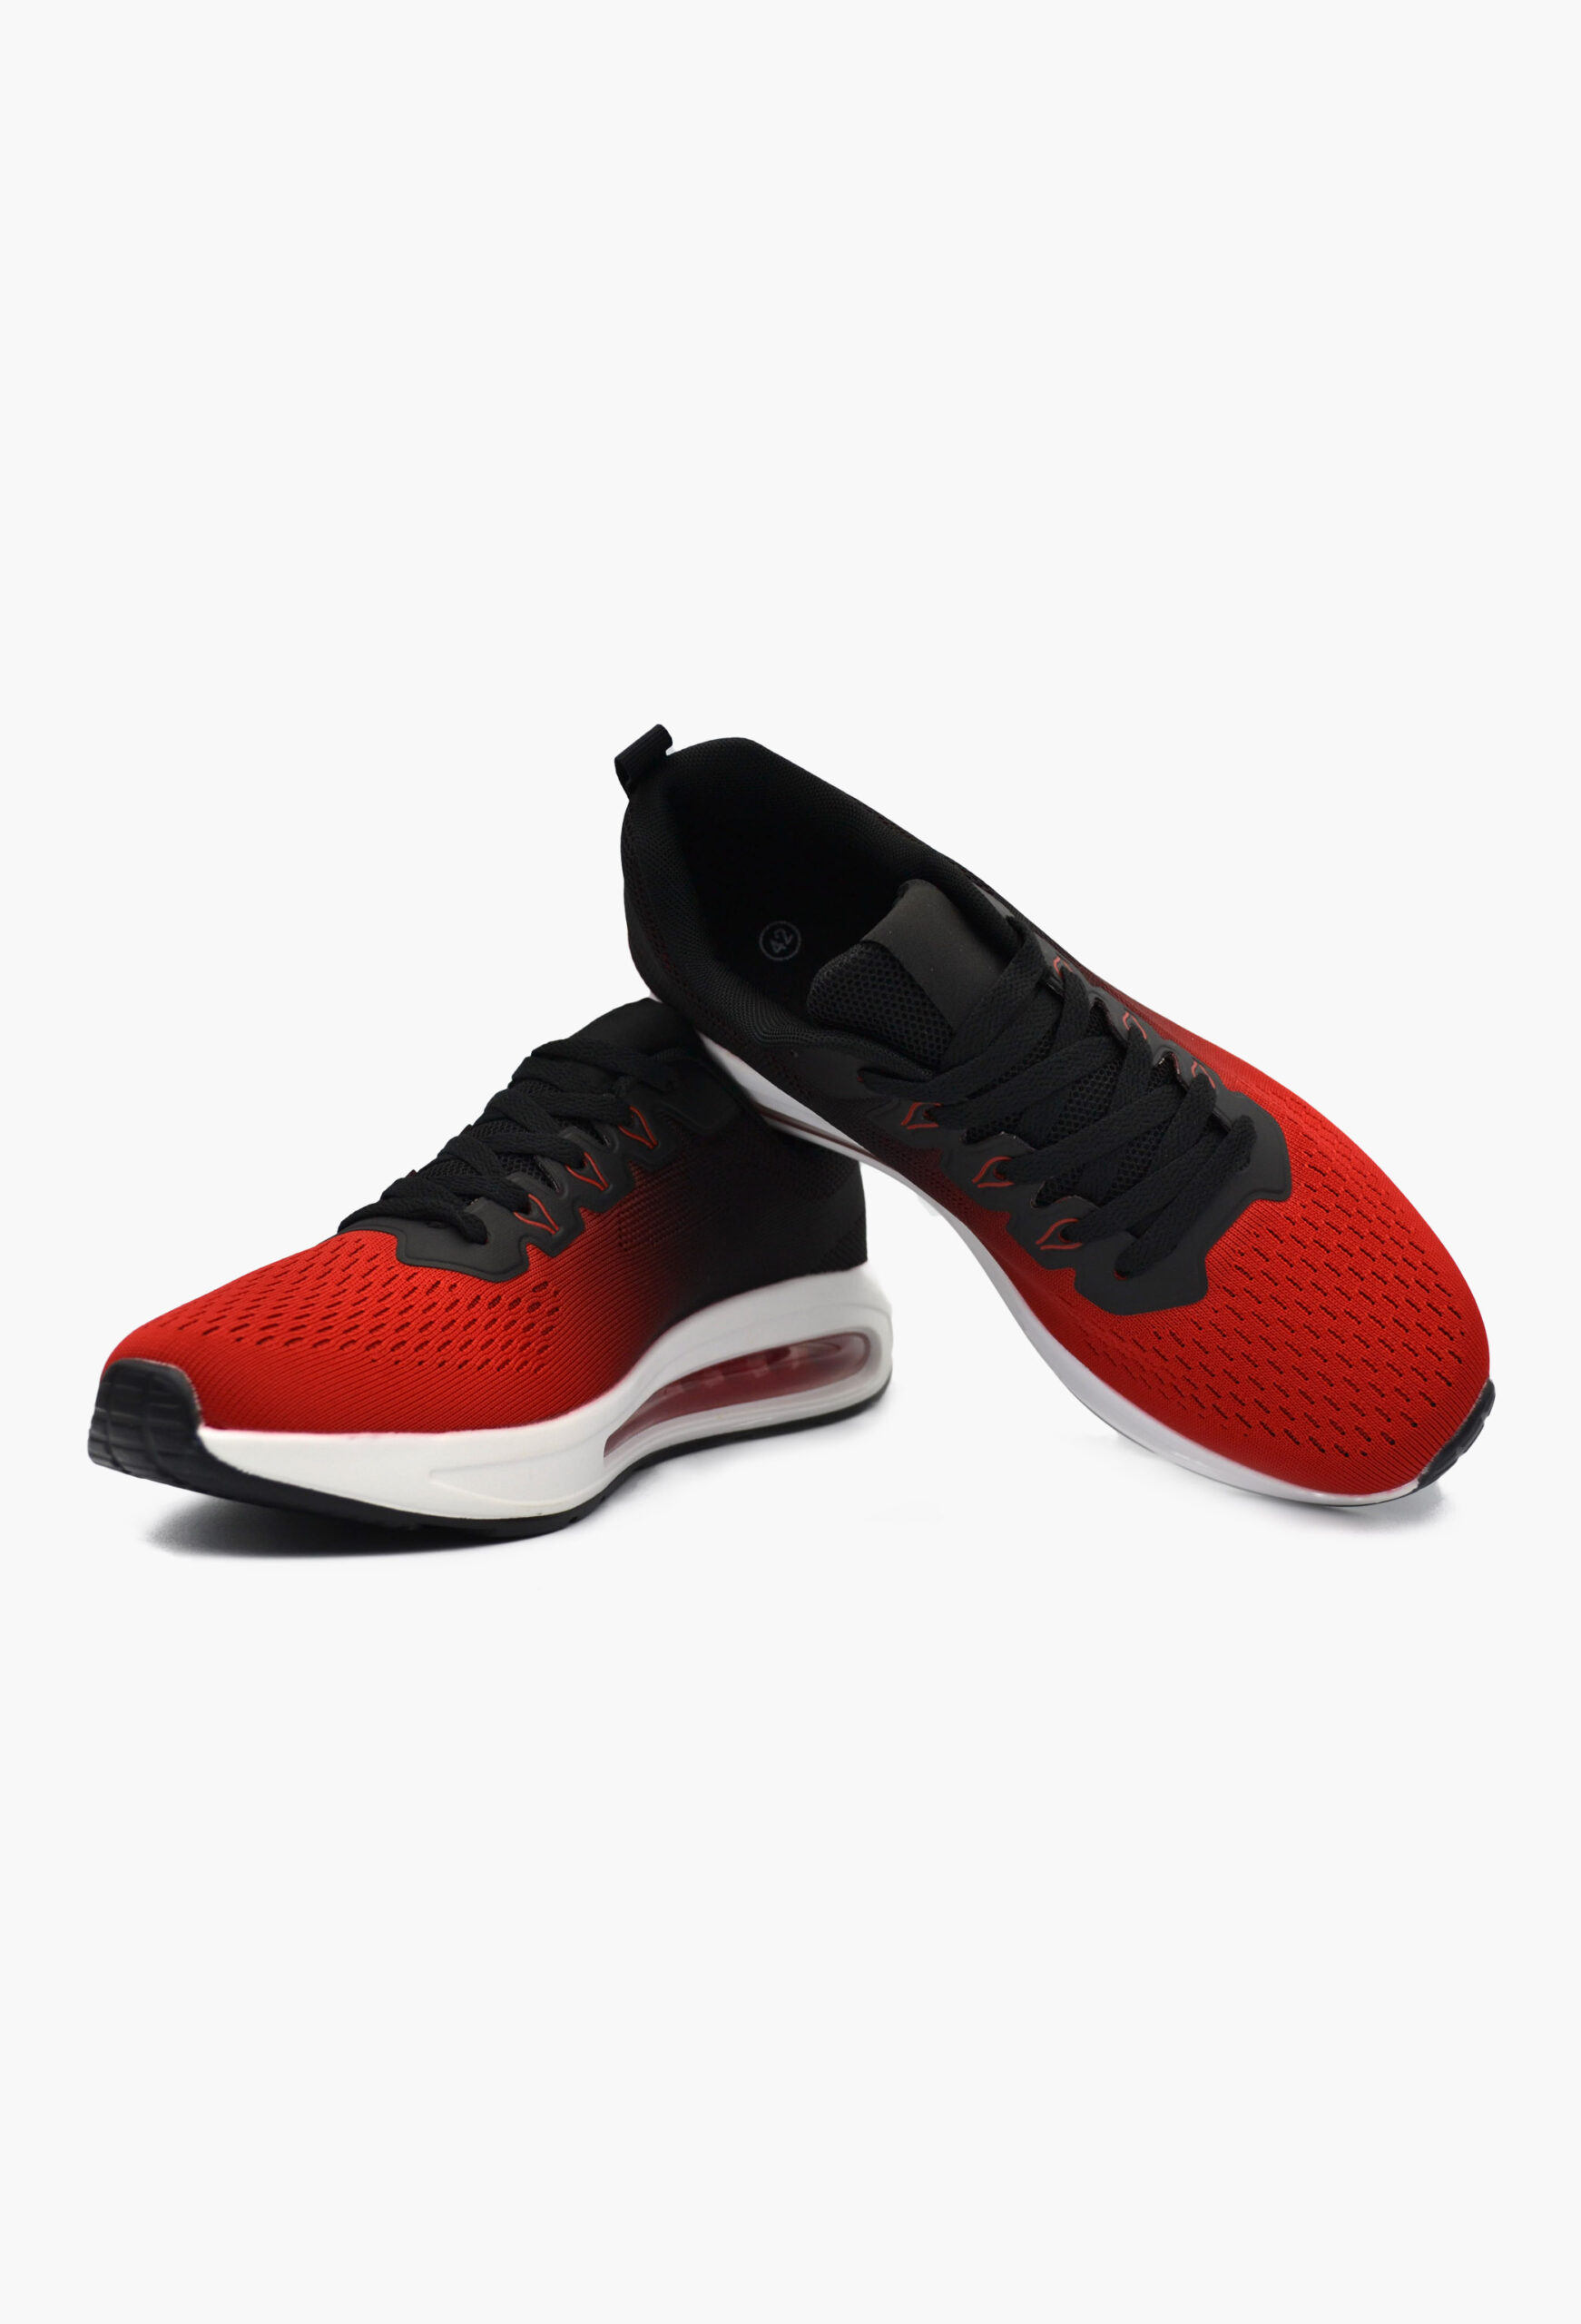 Ανδρικά Αθλητικά Παπούτσια για Τρέξιμο Κόκκινο / U1227-10-red/black ΑΘΛΗΤΙΚΑ & SNEAKERS joya.gr